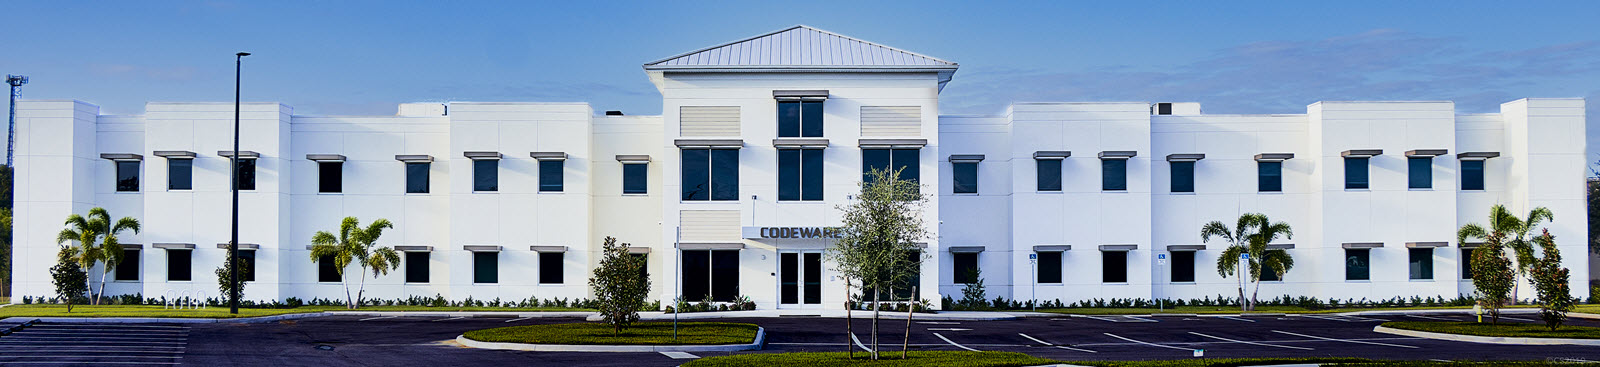 Nueva sede corporativa de Codeware en Sarasota, FL USA